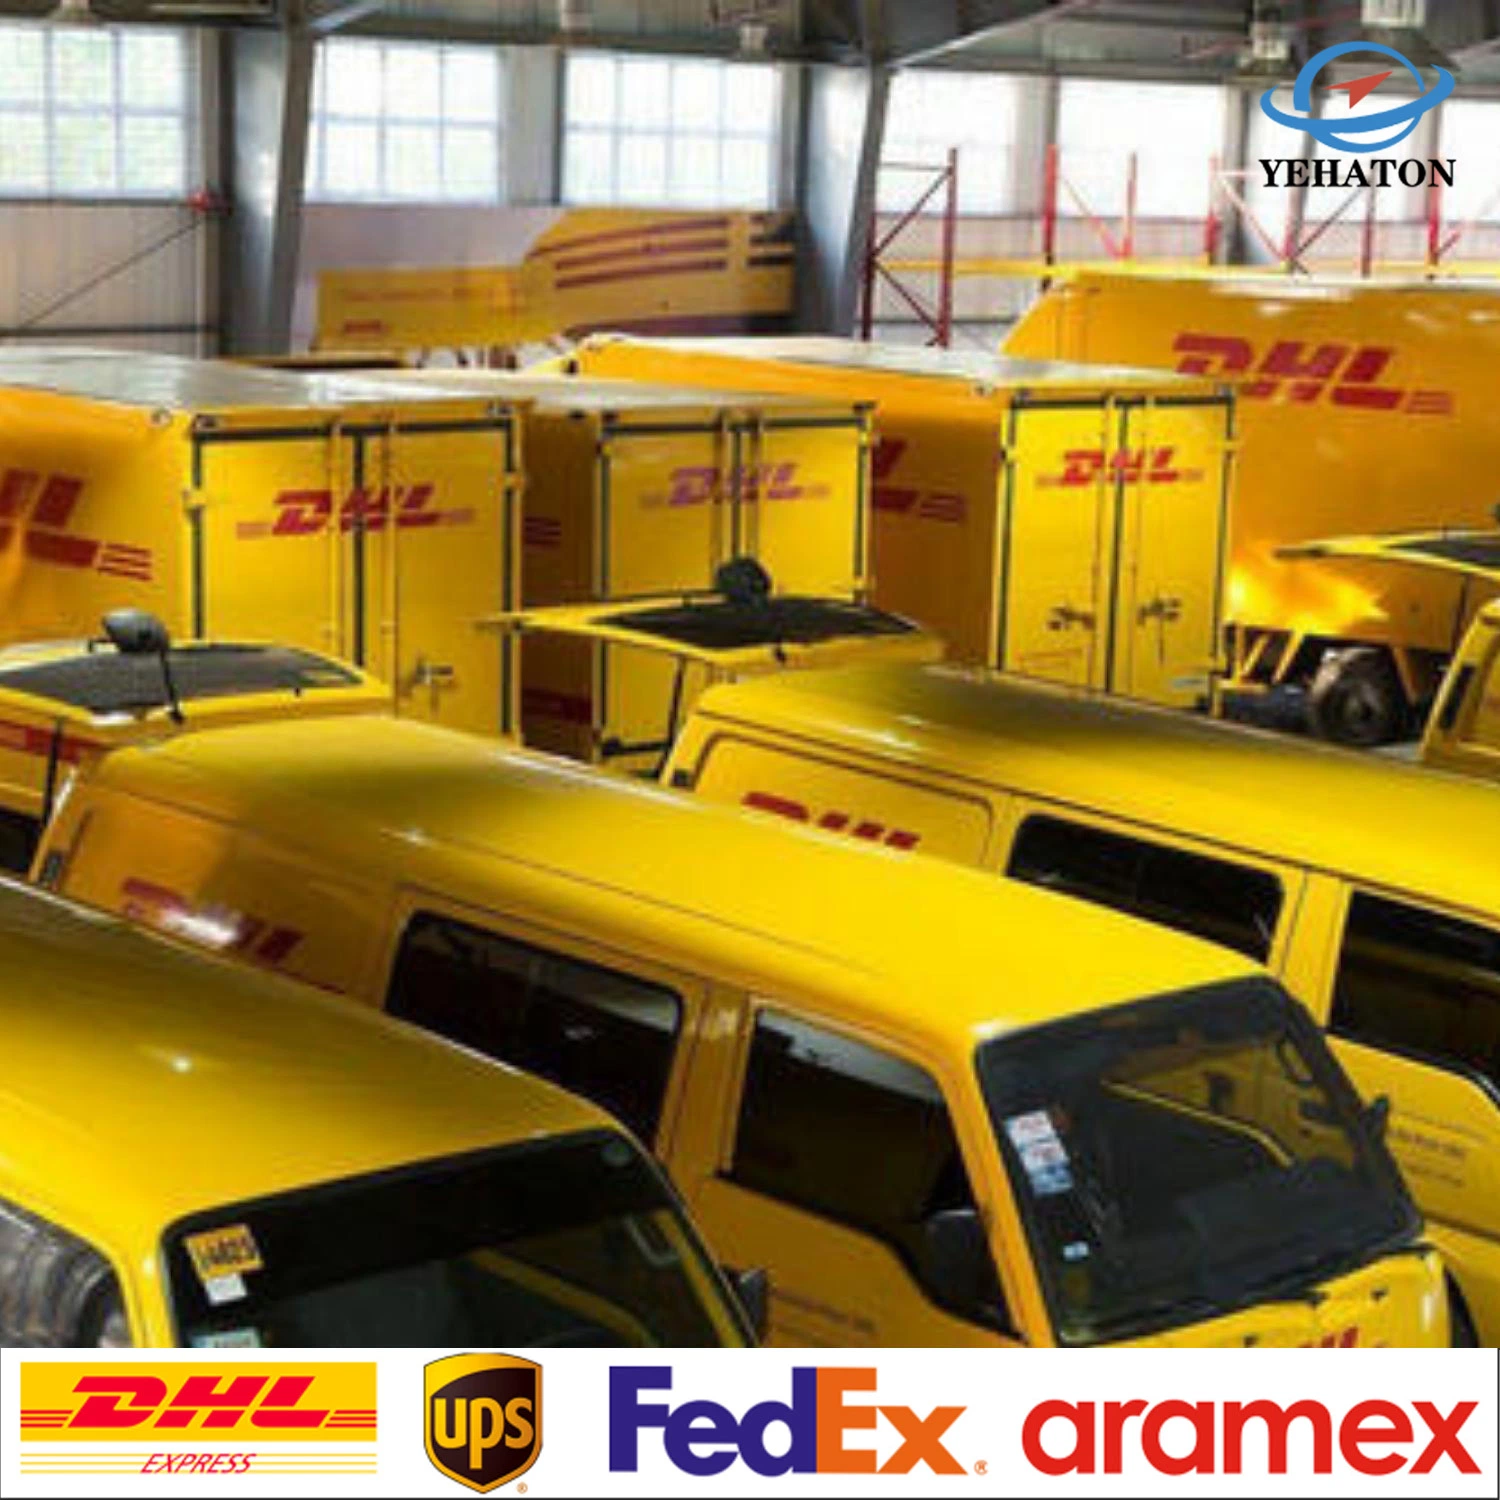 Mejor precio de exportación de China a EE.UU Amazon Ont8 Warehouse Reino Unido Alemania Francia Italia todo el mundo, Air Freight Forwarder DHL/Entrega de FedEx Express logística de transporte